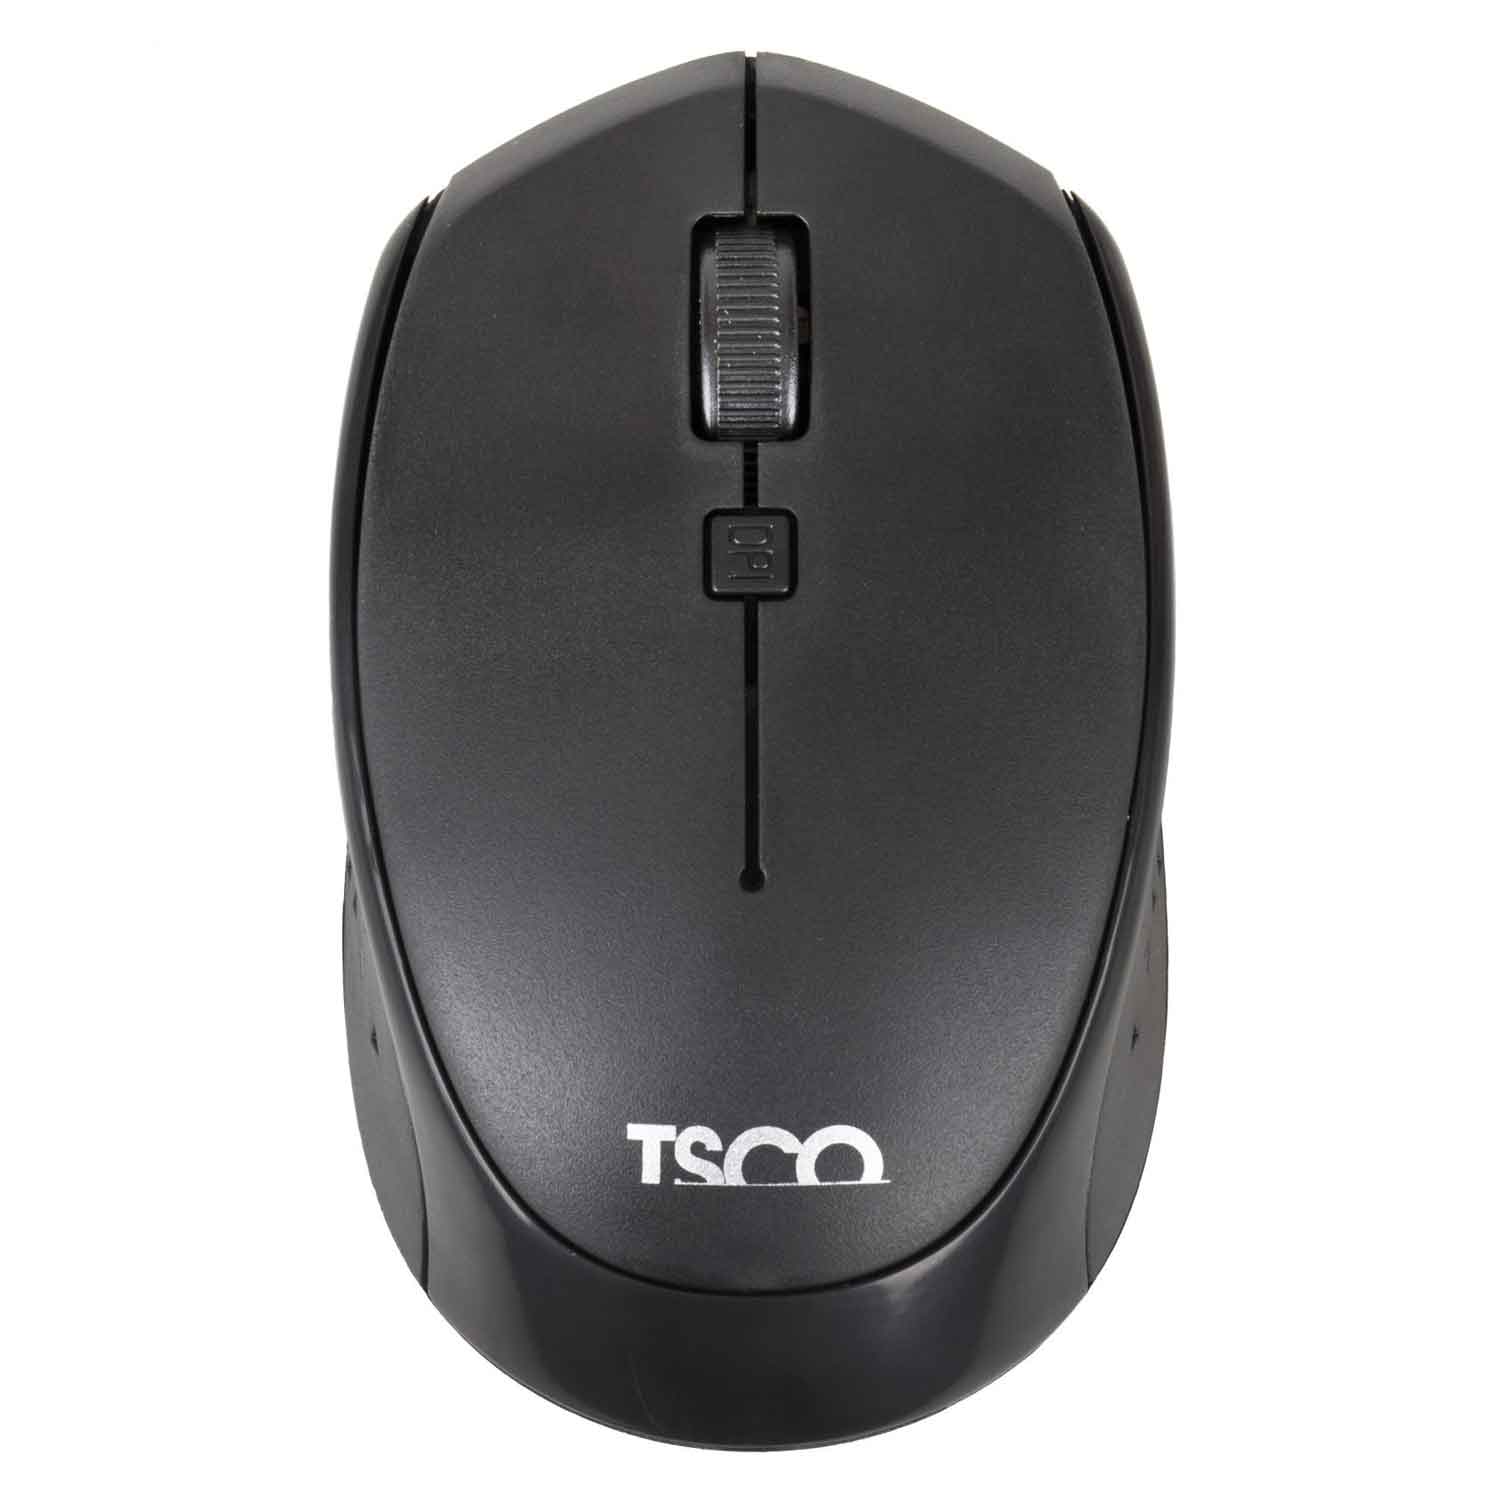  ماوس بی سیم تسکو مدل TSCO 659W ا TSCO 659W Wireless Mouse کد 254074